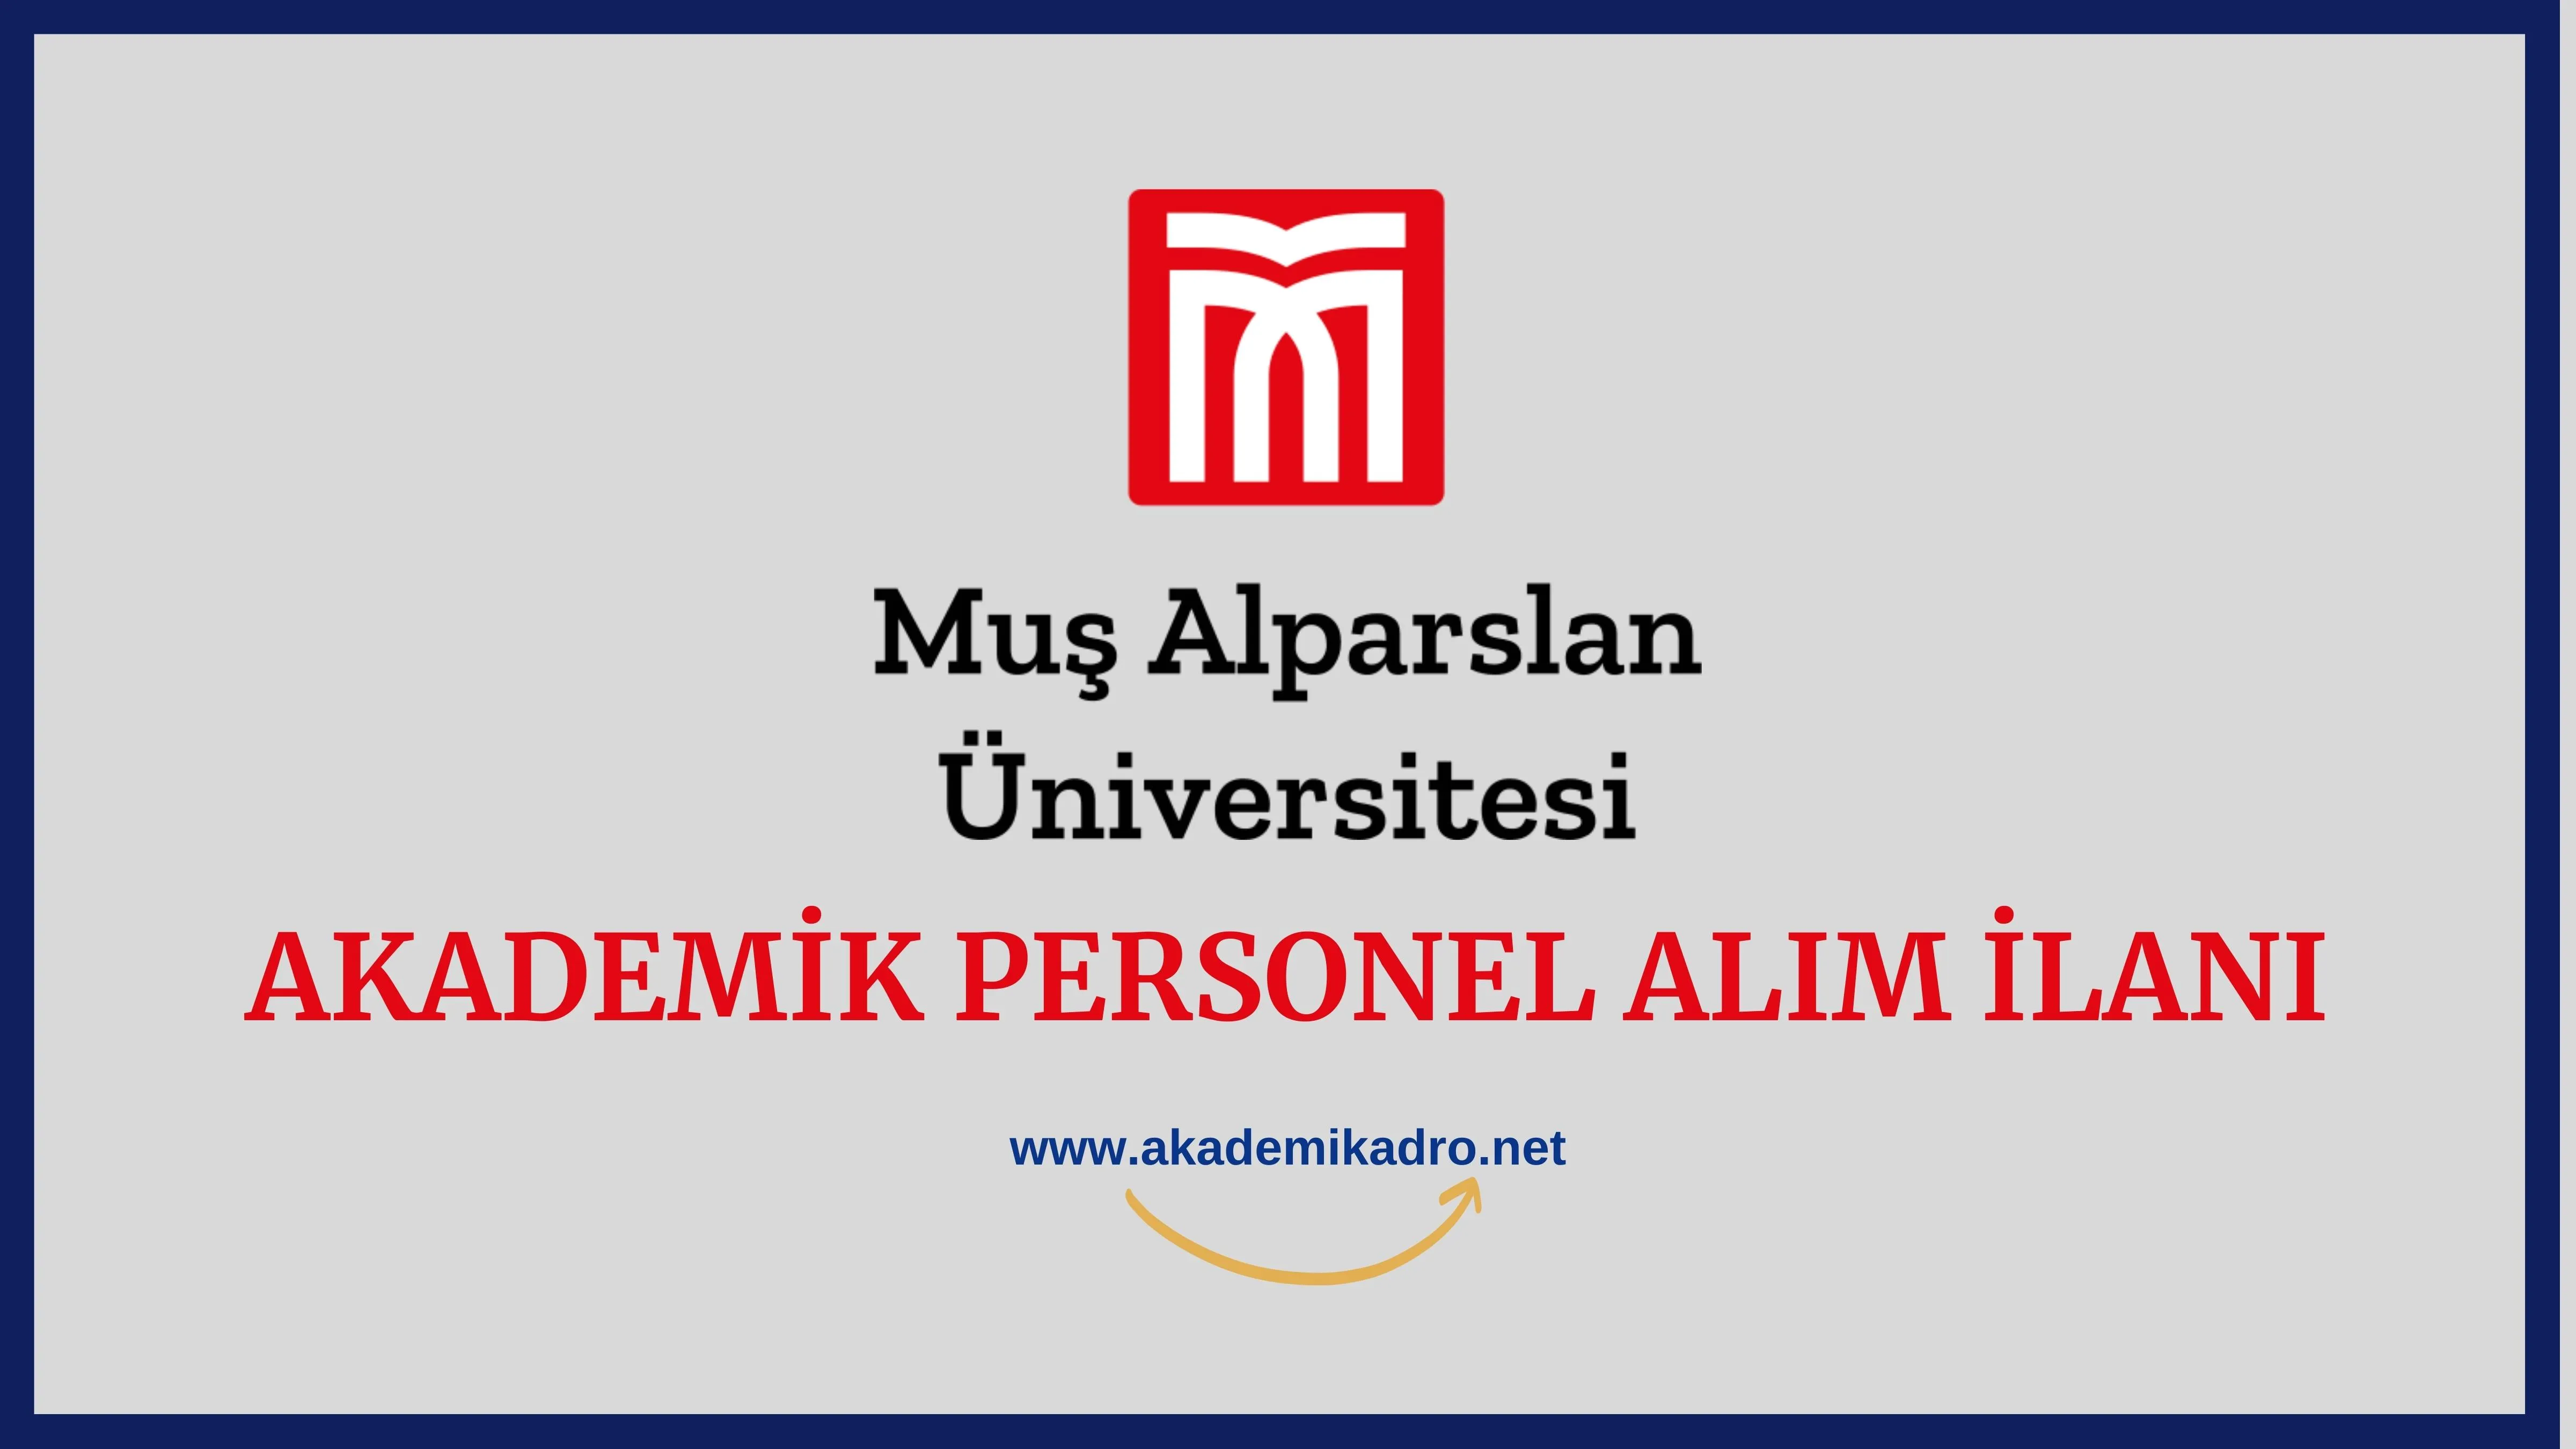 Muş Alparslan Üniversitesi birçok alandan 26 Öğretim üyesi alacak.